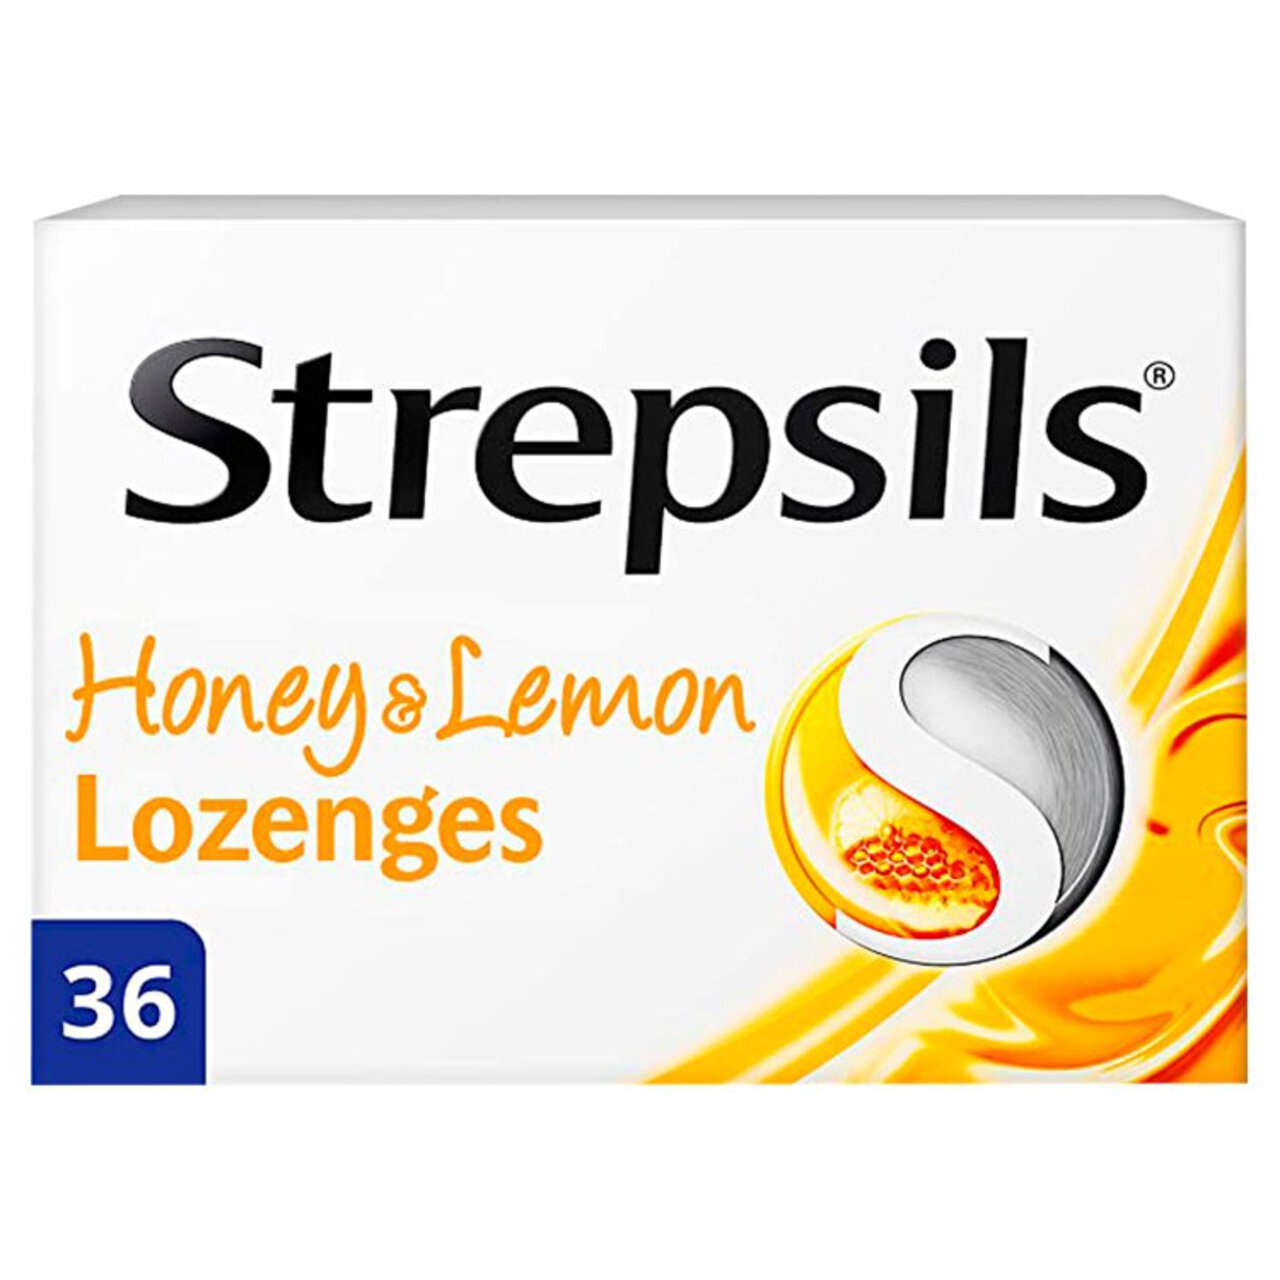 Strepsils Honey & Lemon Lozenges for Sore Throat 36 per pack